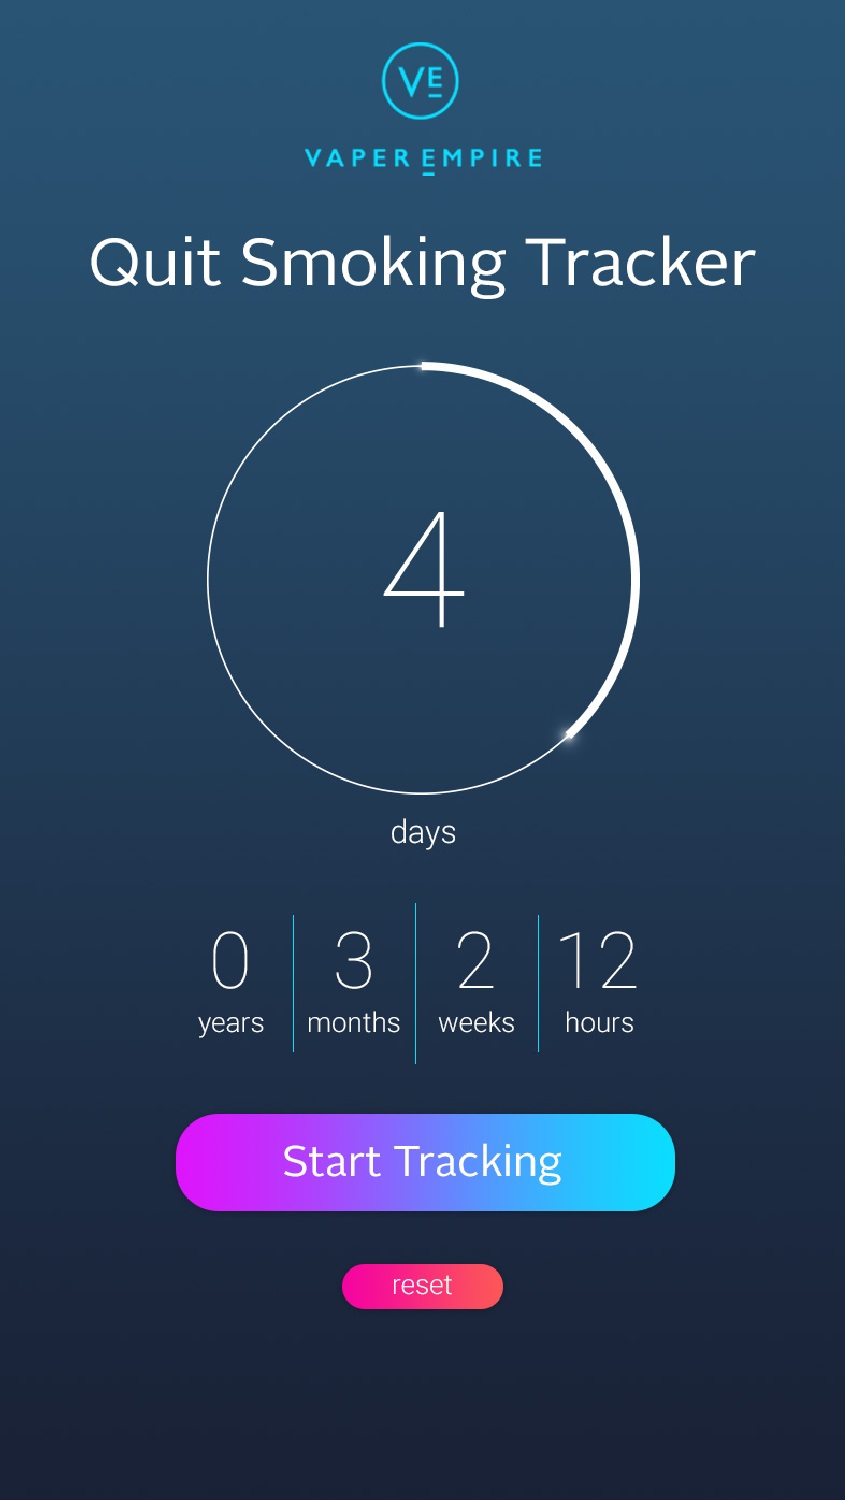 Vaper Empire's Quit Smoking Progress Tracker App